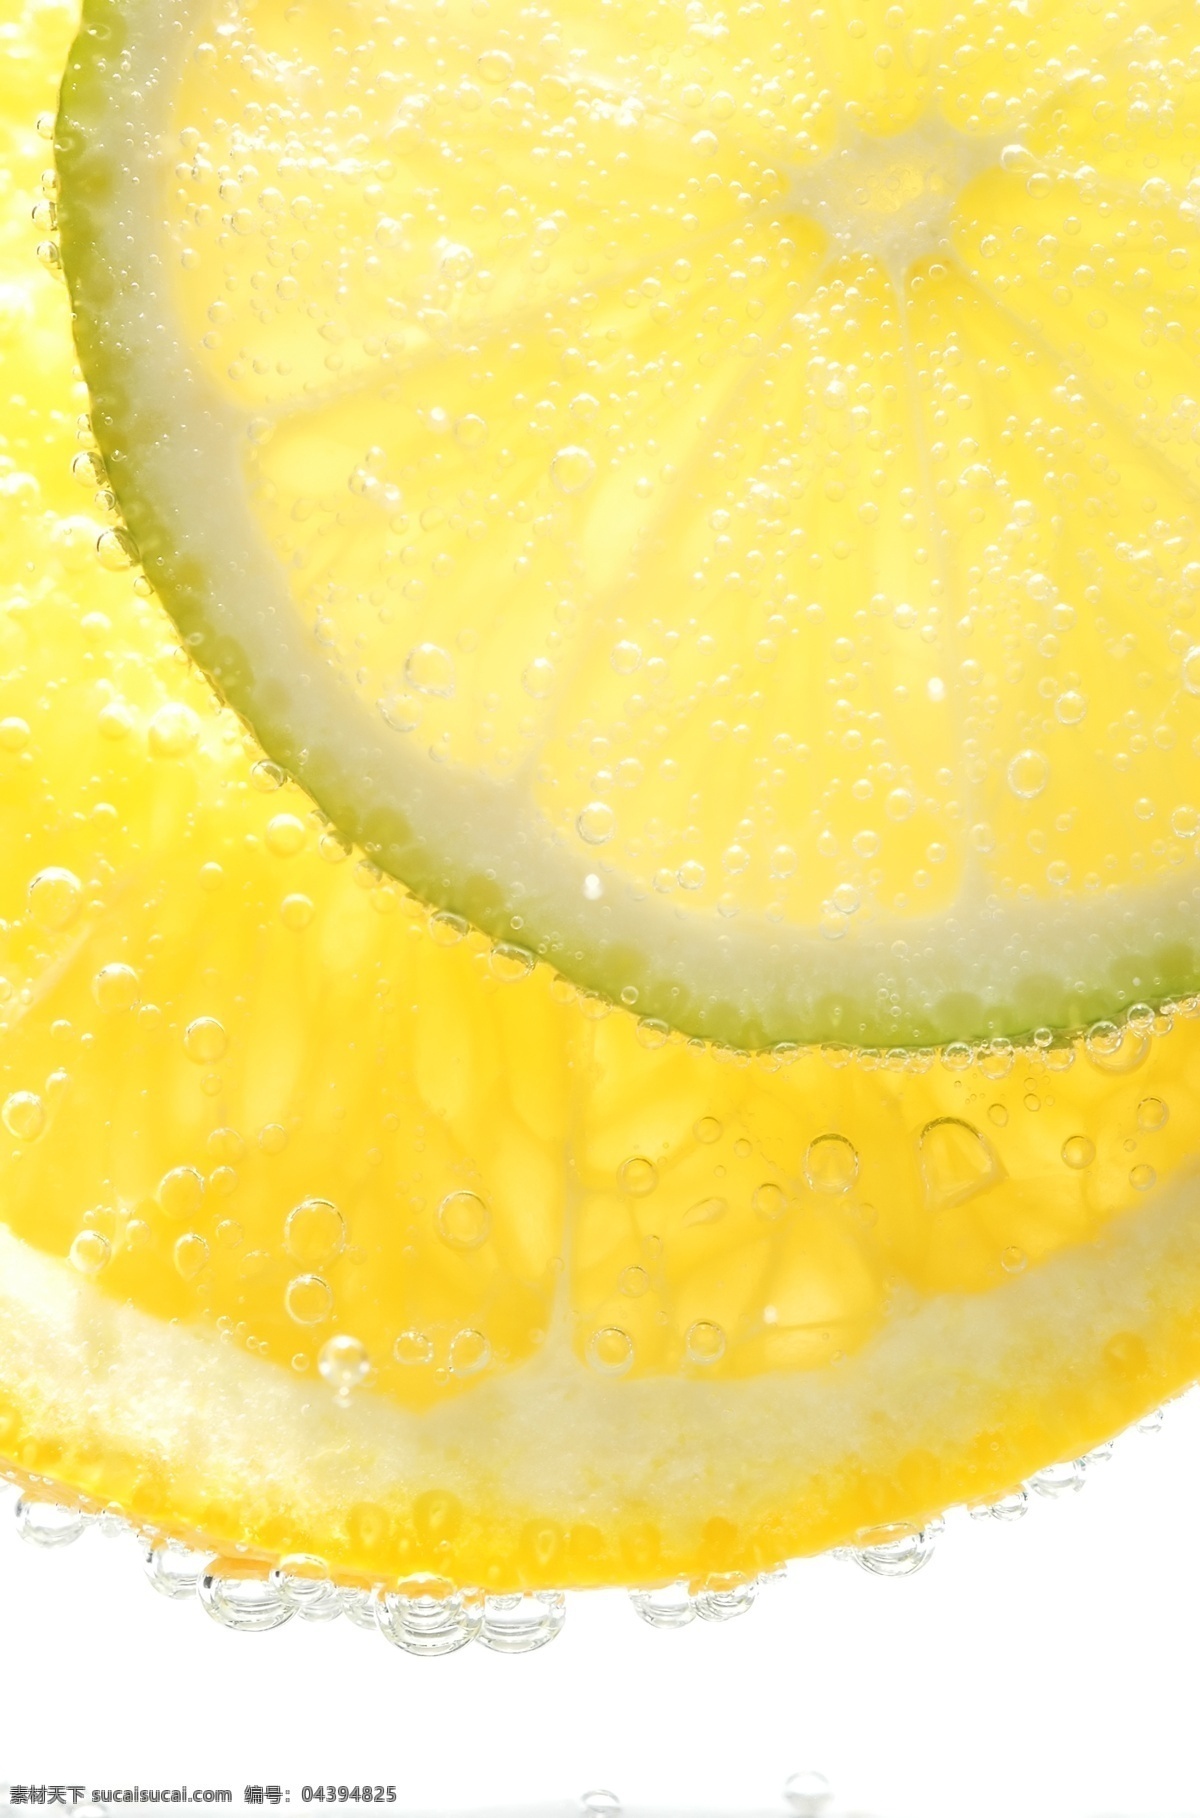 柠檬 片 水果 新鲜水果 橙子 柠檬片 水珠 水滴 背景图片 水果背景 蔬菜图片 餐饮美食